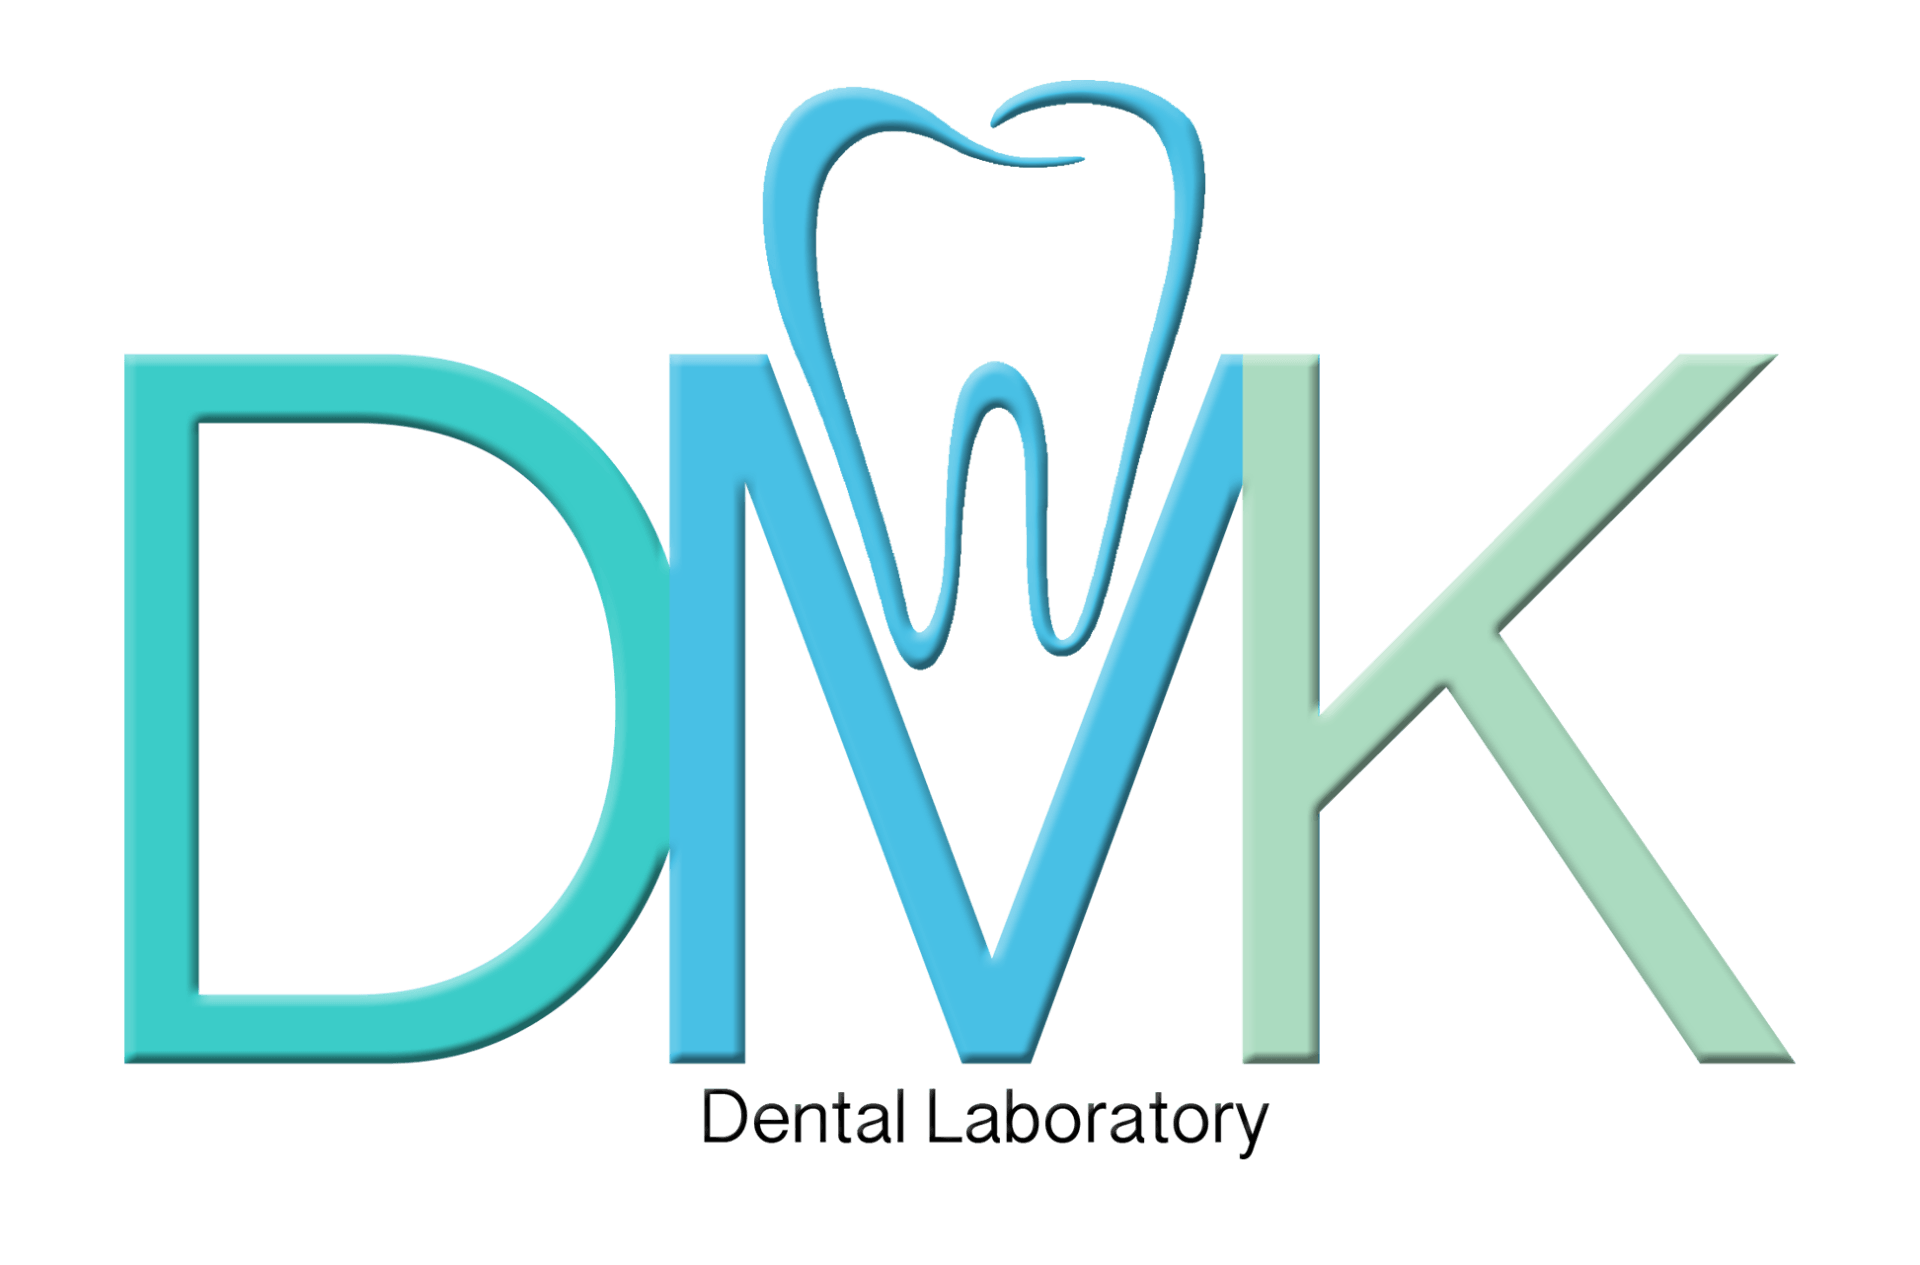 Denture Repairs